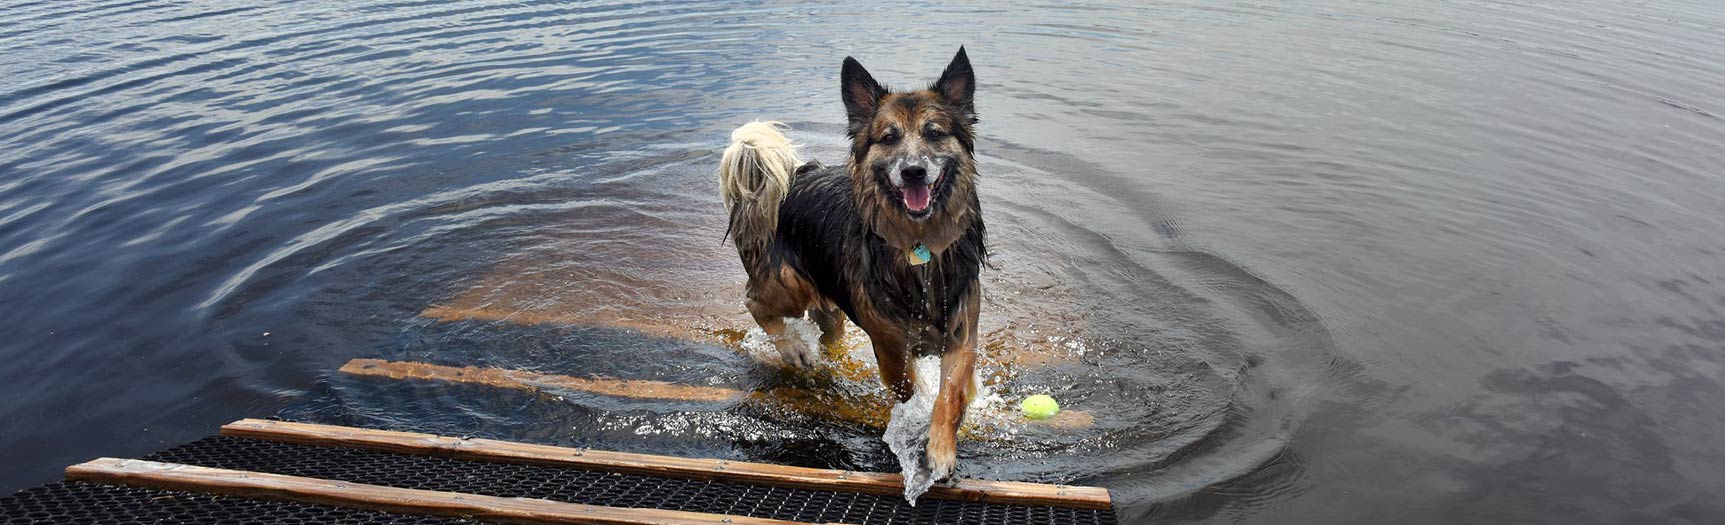 dog playing in lake|Supervisor Chris Barnett at dog park